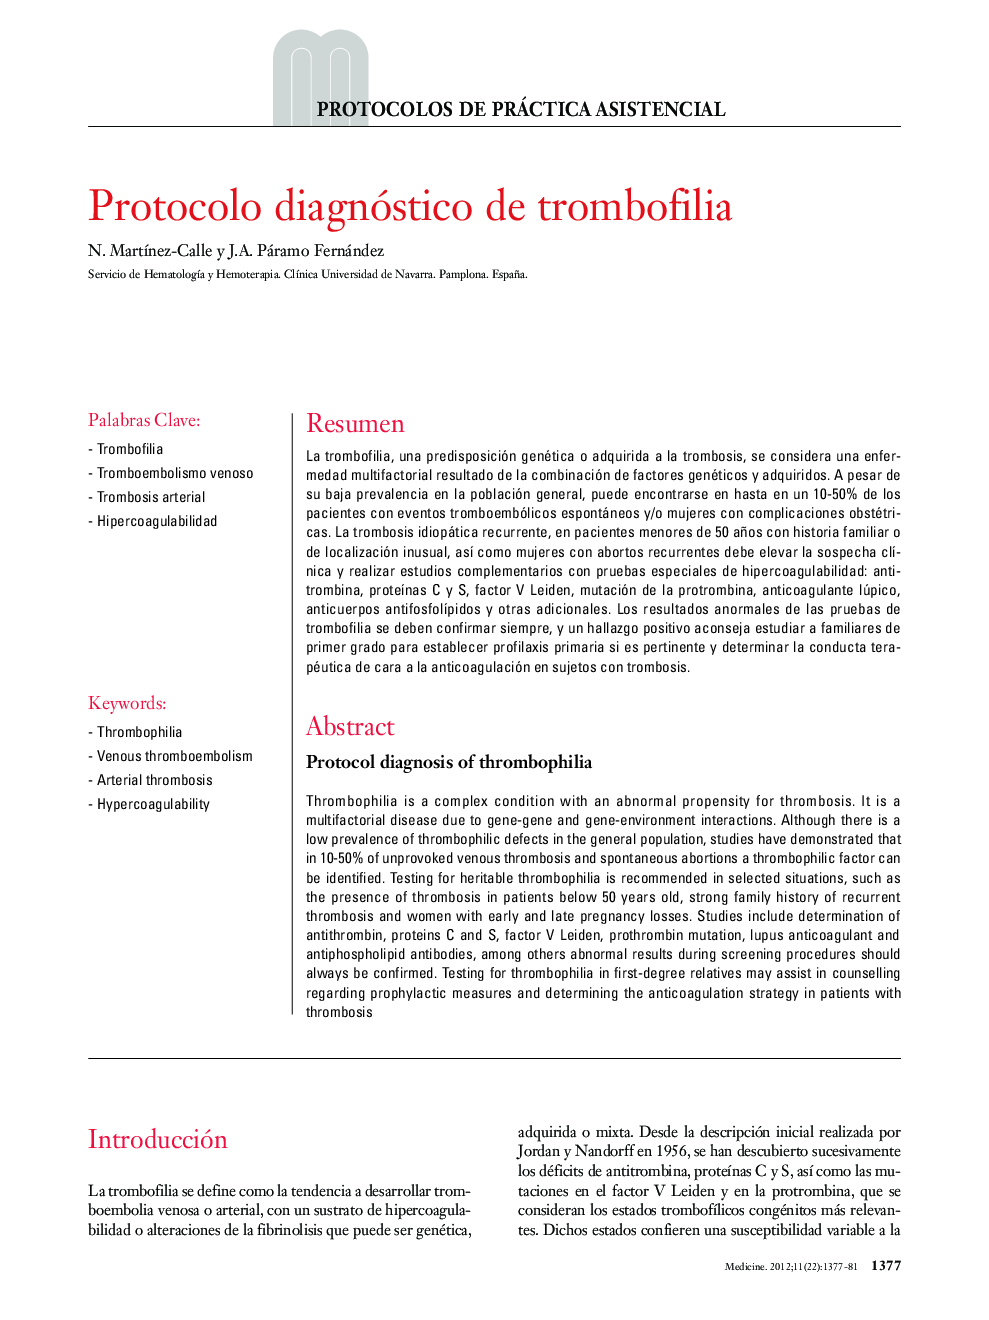 Protocolo diagnóstico de trombofilia